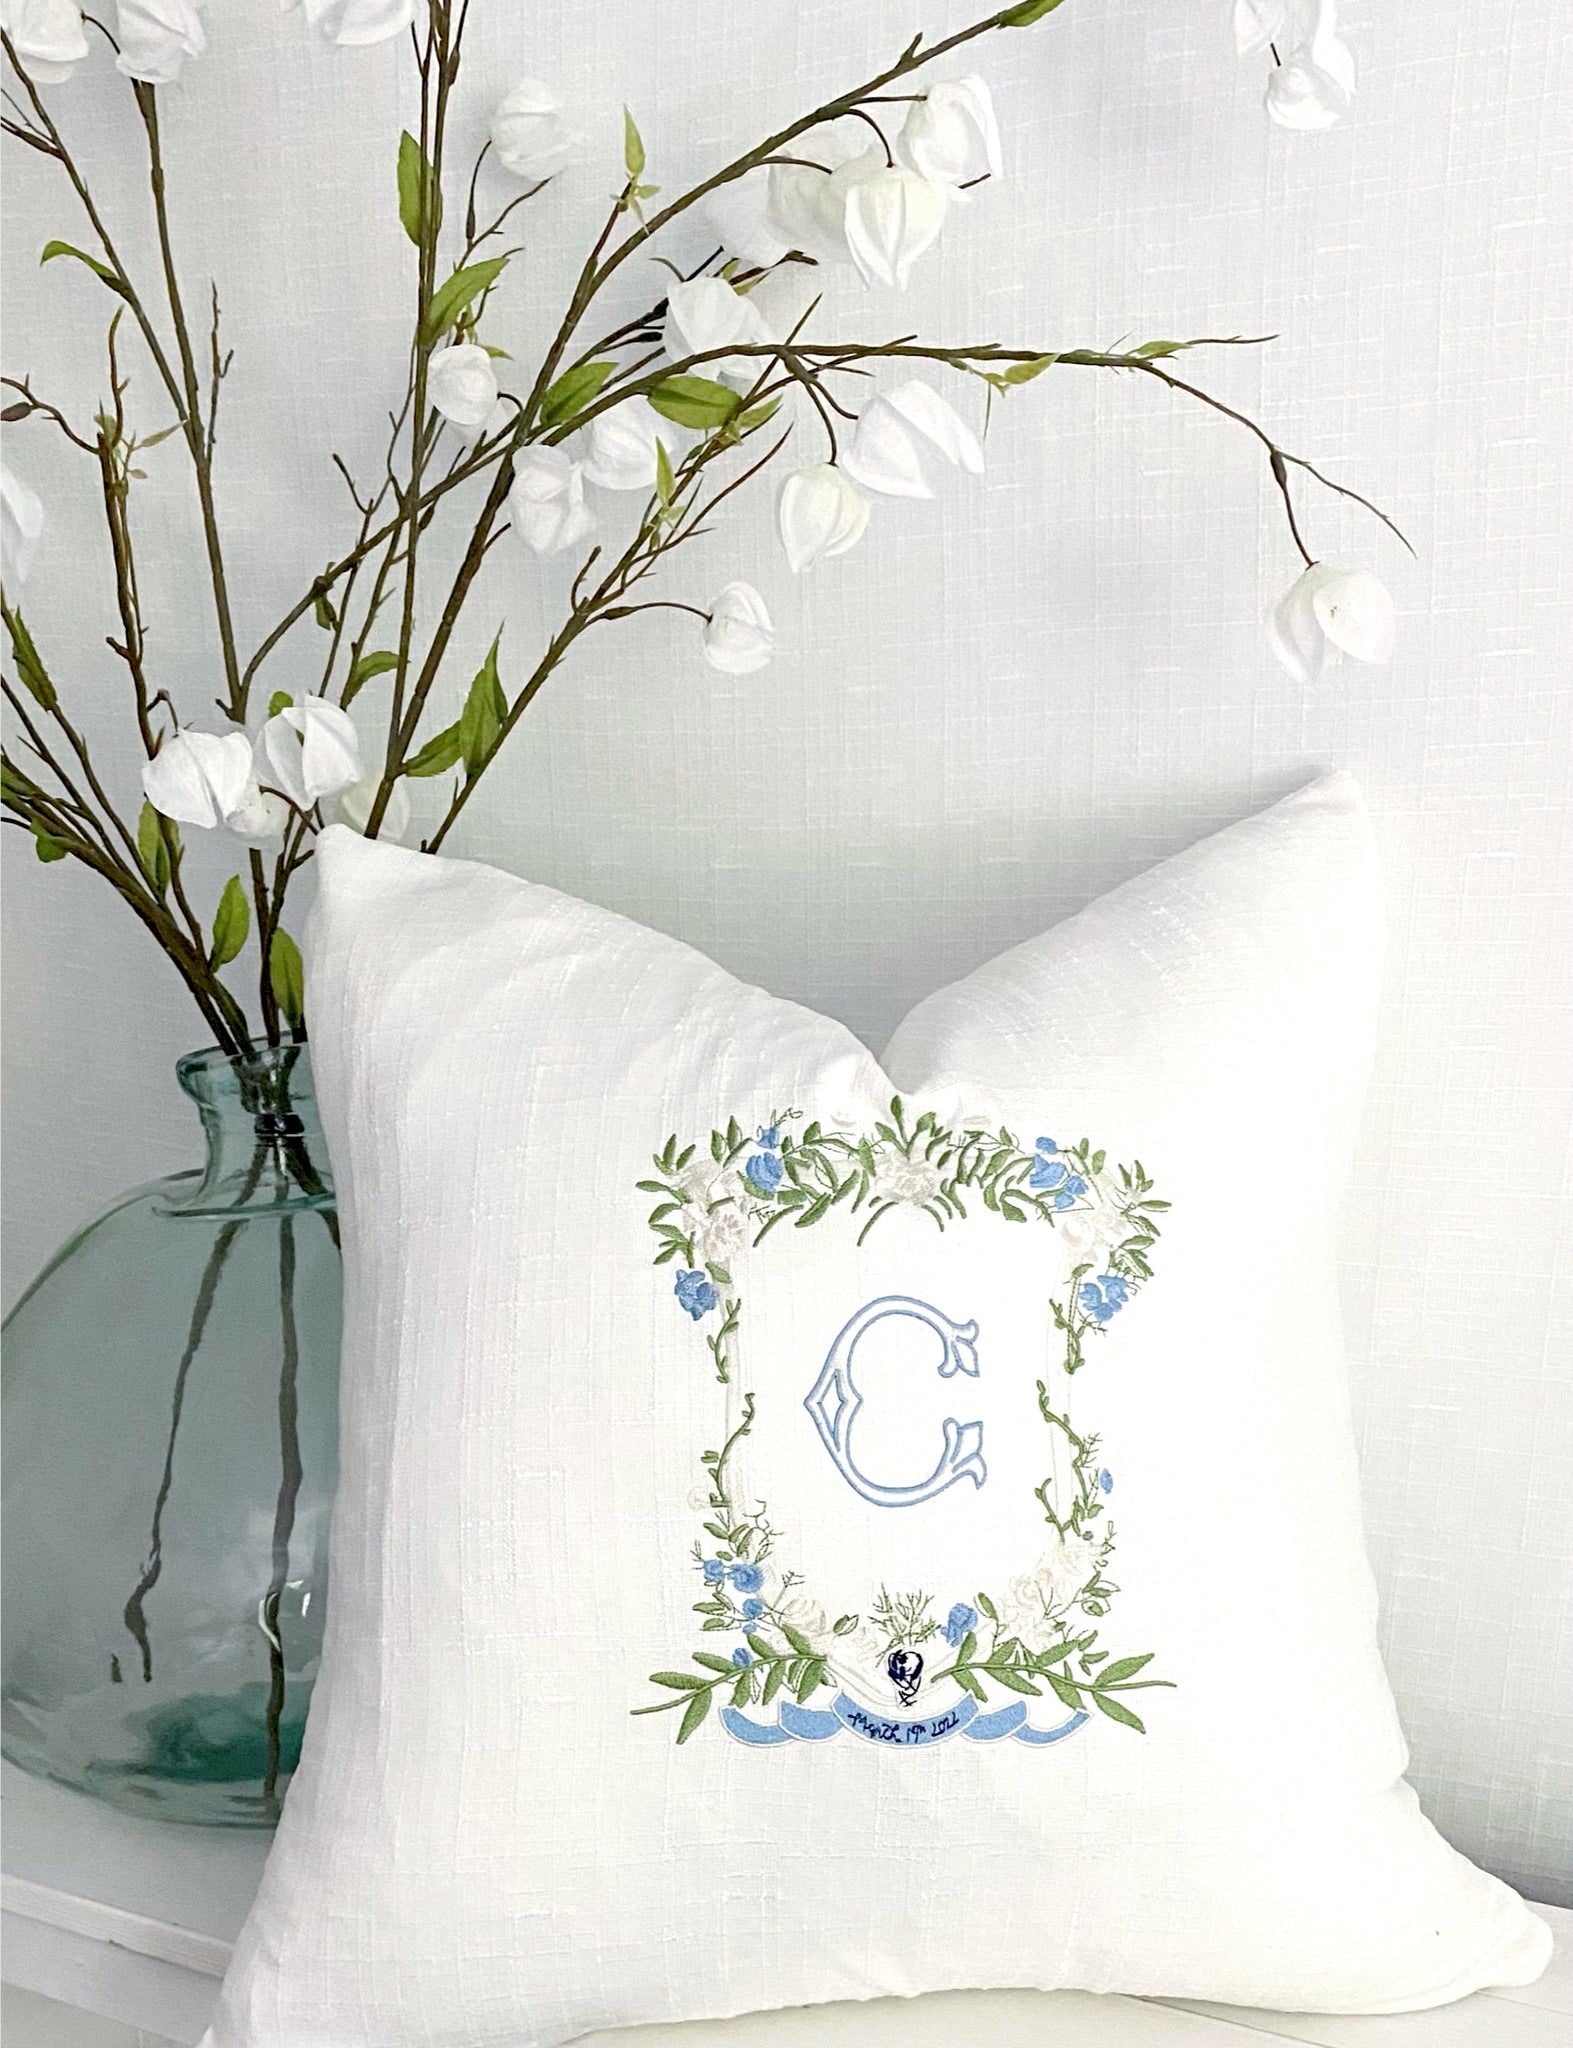 Wedding Crest Pillow